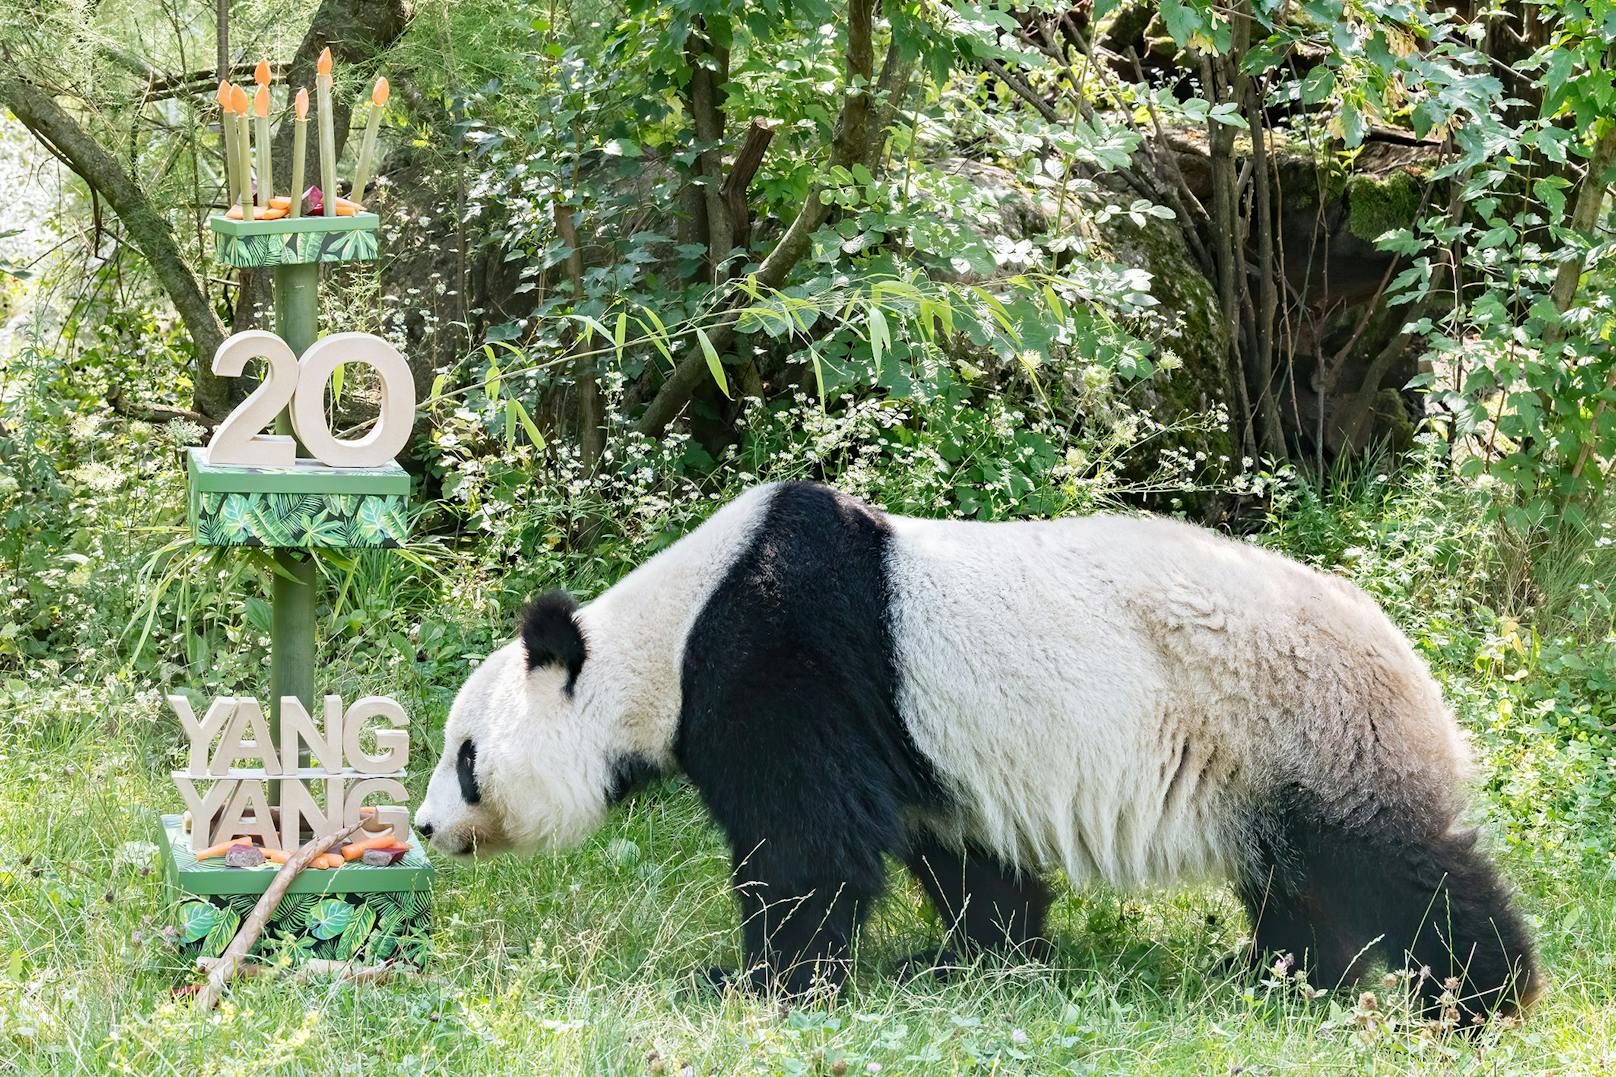 Mahlzeit! Panda-Weibchen Yang Yang feiert am 10. August ihren 20. Geburtstag mit einer besonderen Torte.